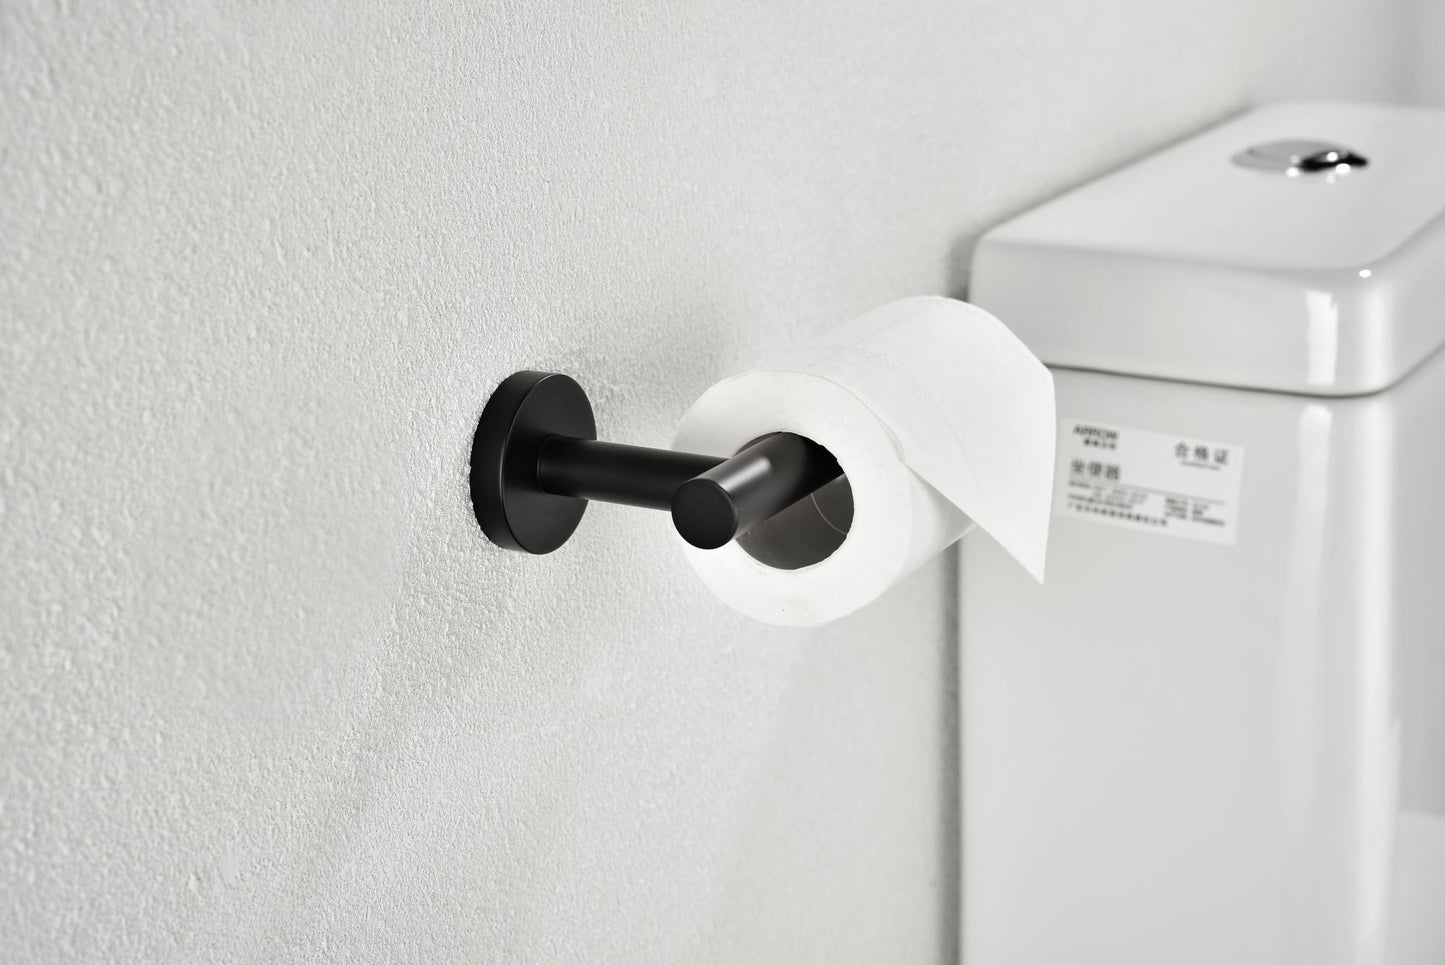 Toilet Paper Holder for Bathroom 2 Pack Tissue Holder Dispenser SUS304 Stainless Steel RUSTPROOF Toilet Roll Holder Wall Mount Matte Black